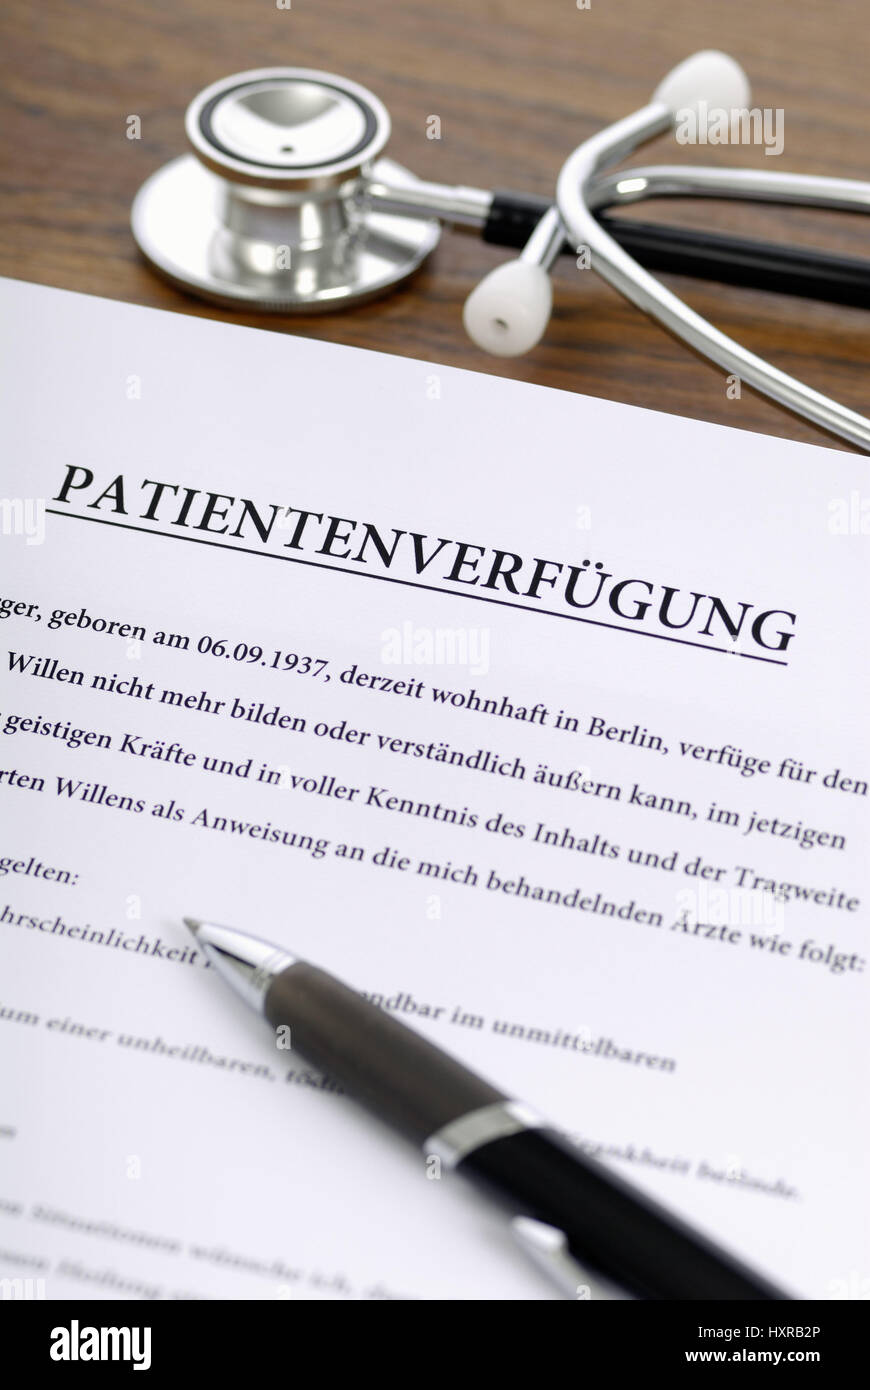 Patient's possession, Patientenverfügung Stock Photo